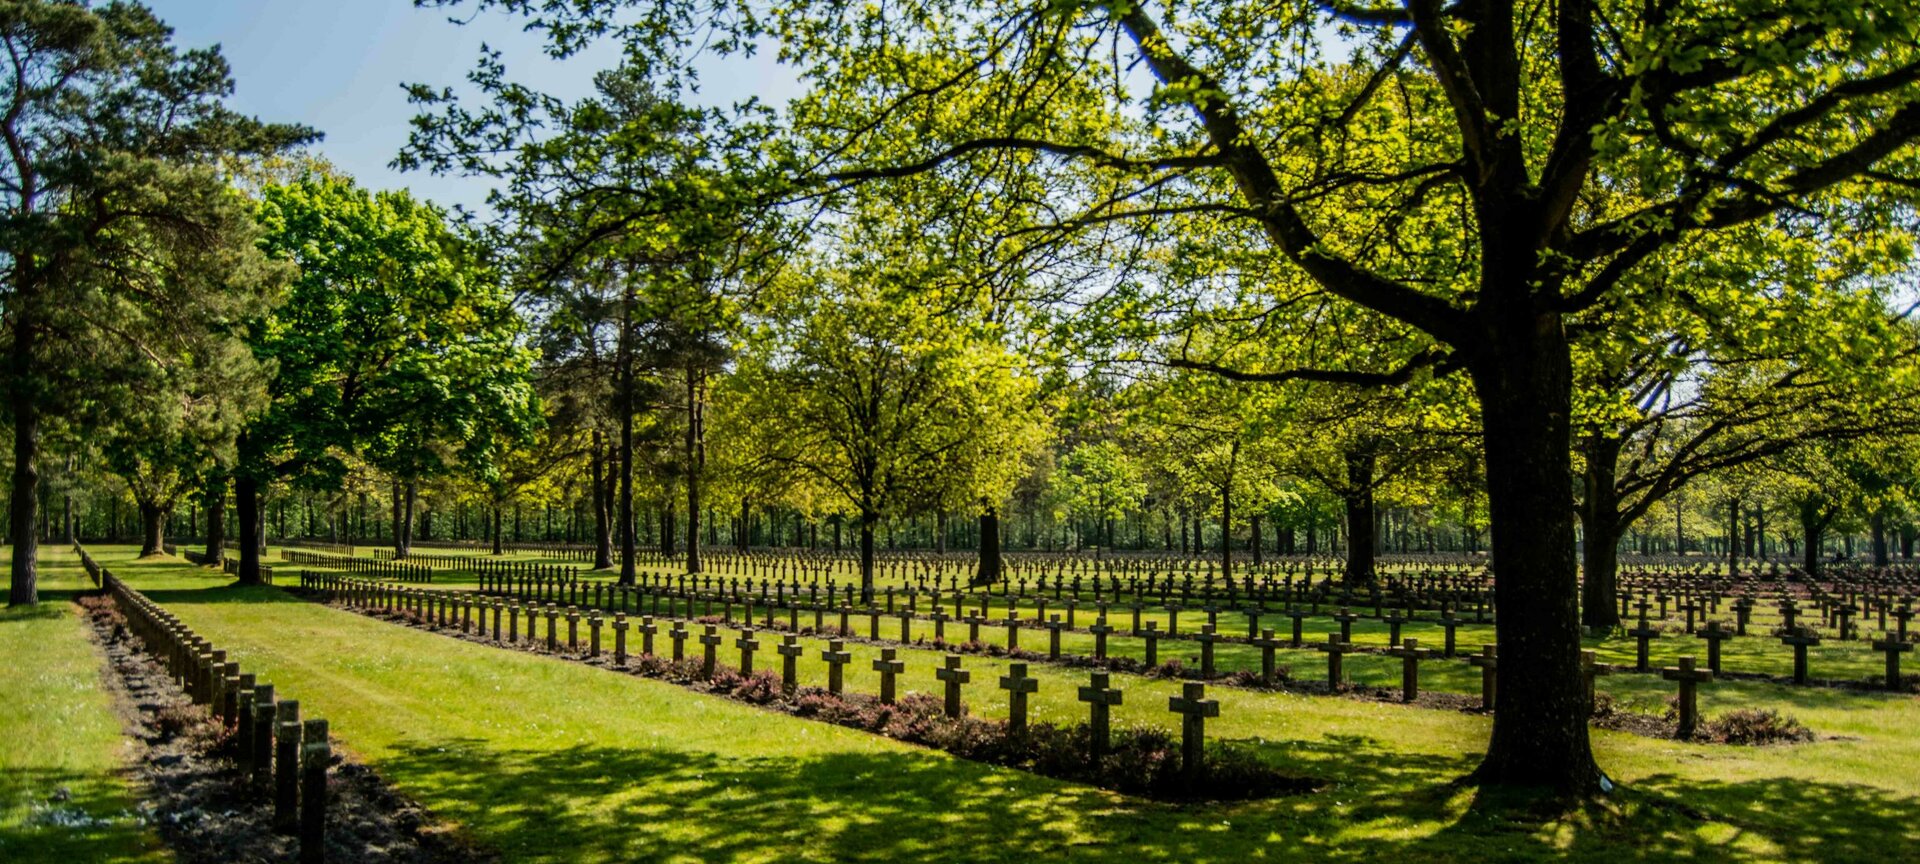 Duitse militaire begraafplaats - Duitse militaire begraafplaats